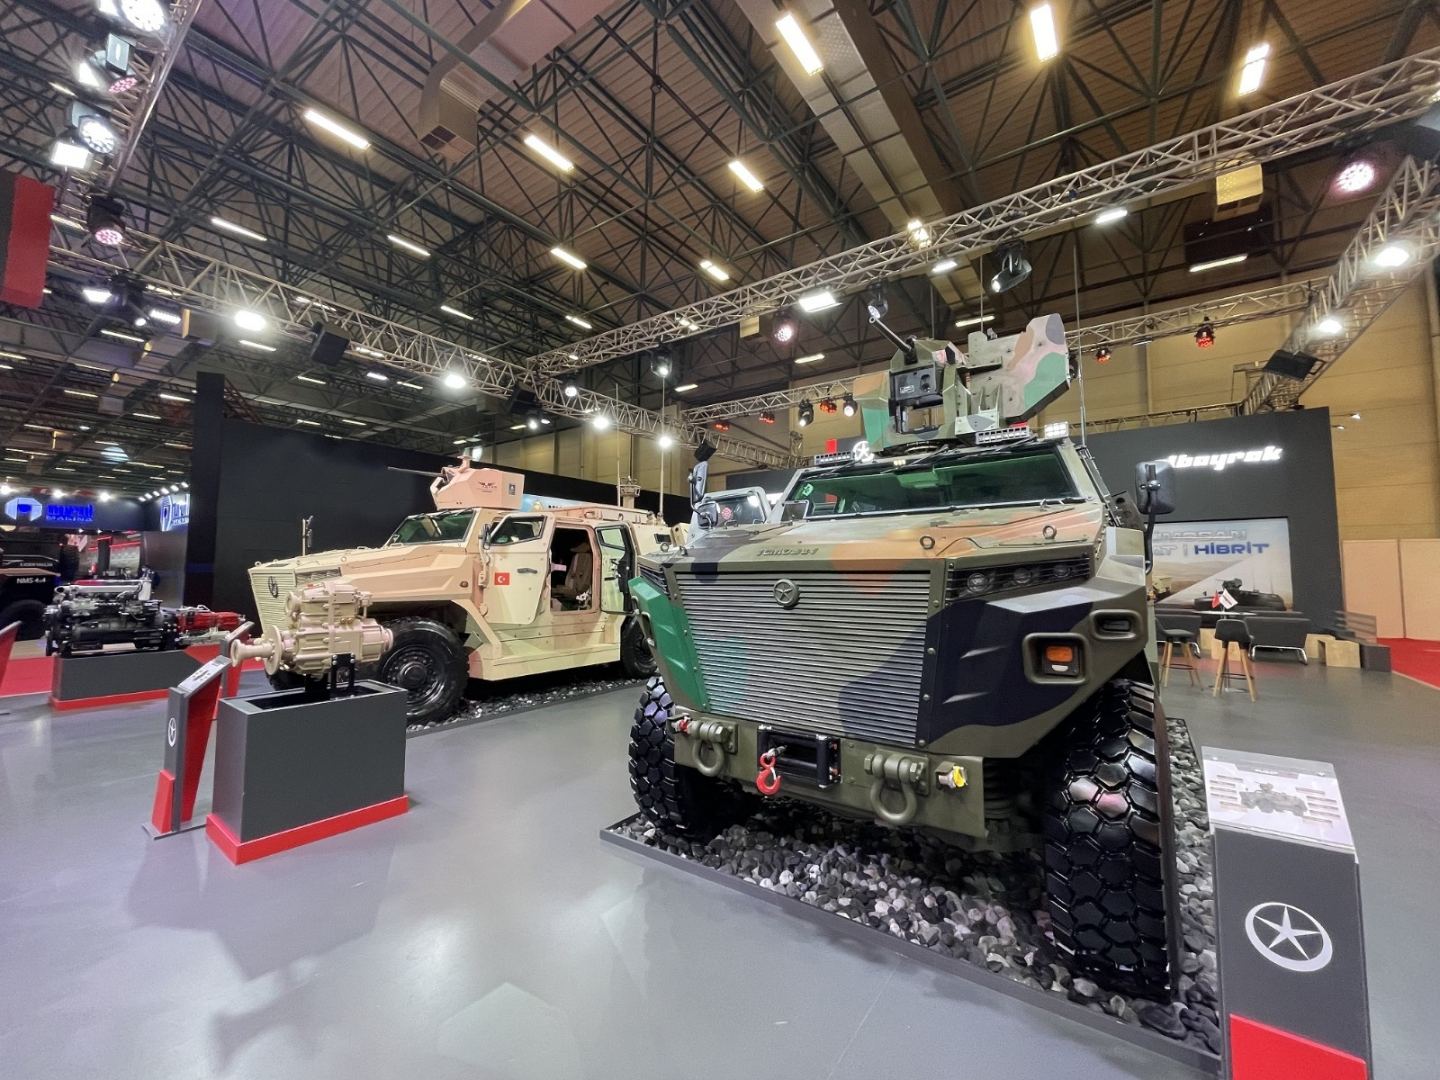 Президент Турции на выставке IDEF-2021 проявил особый интерес к отечественному броневику производства TÜMOSAN (ФОТО) - Gallery Image